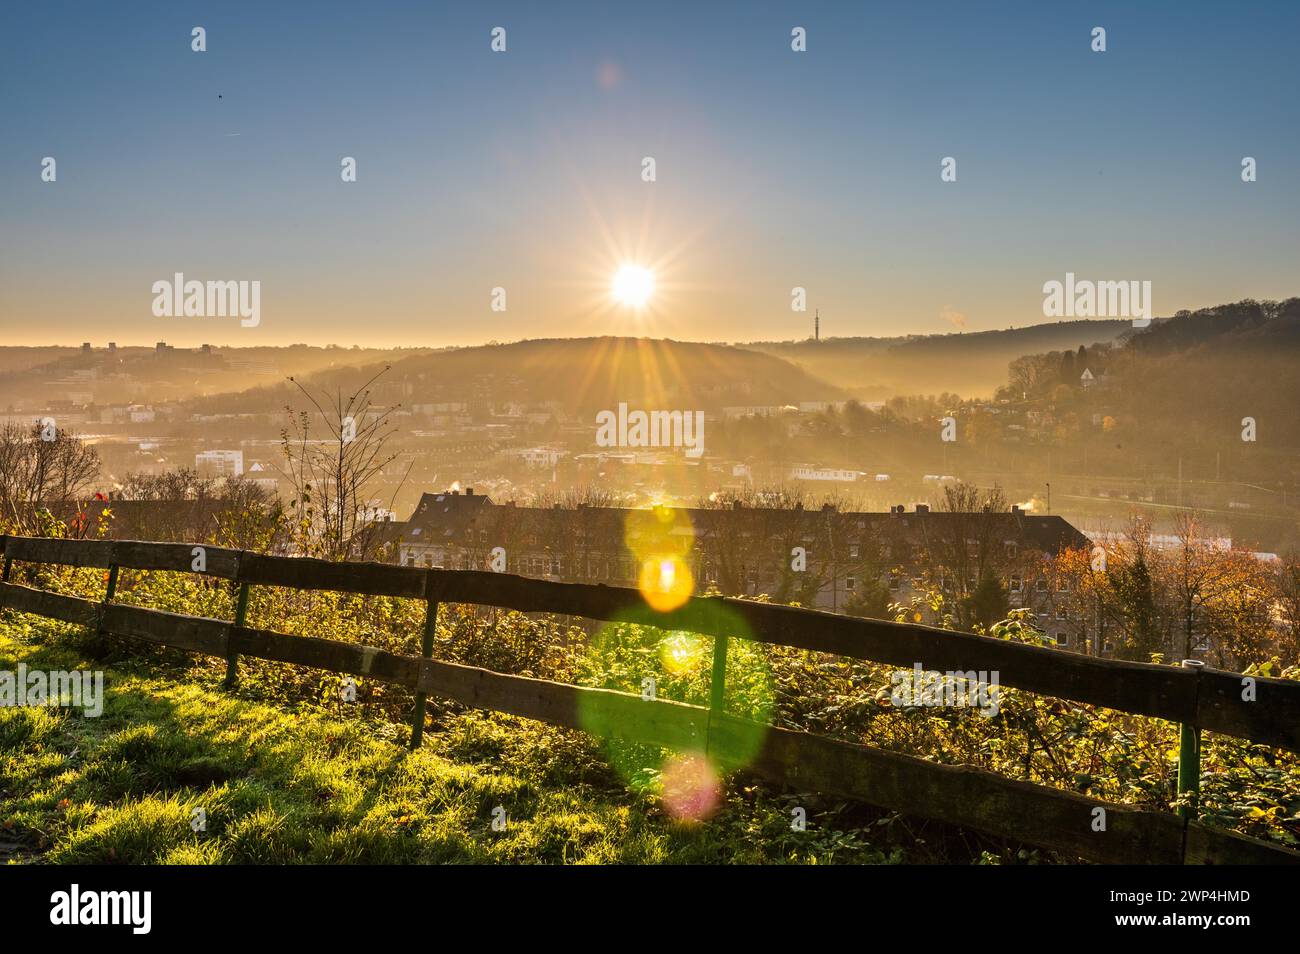 Tôt le matin avec le lever du soleil derrière une clôture séparant un champ des maisons, Arrenberg, Elberfeld, Wuppertal, Bergisches Land, Rhénanie-du-Nord-Westphalie Banque D'Images